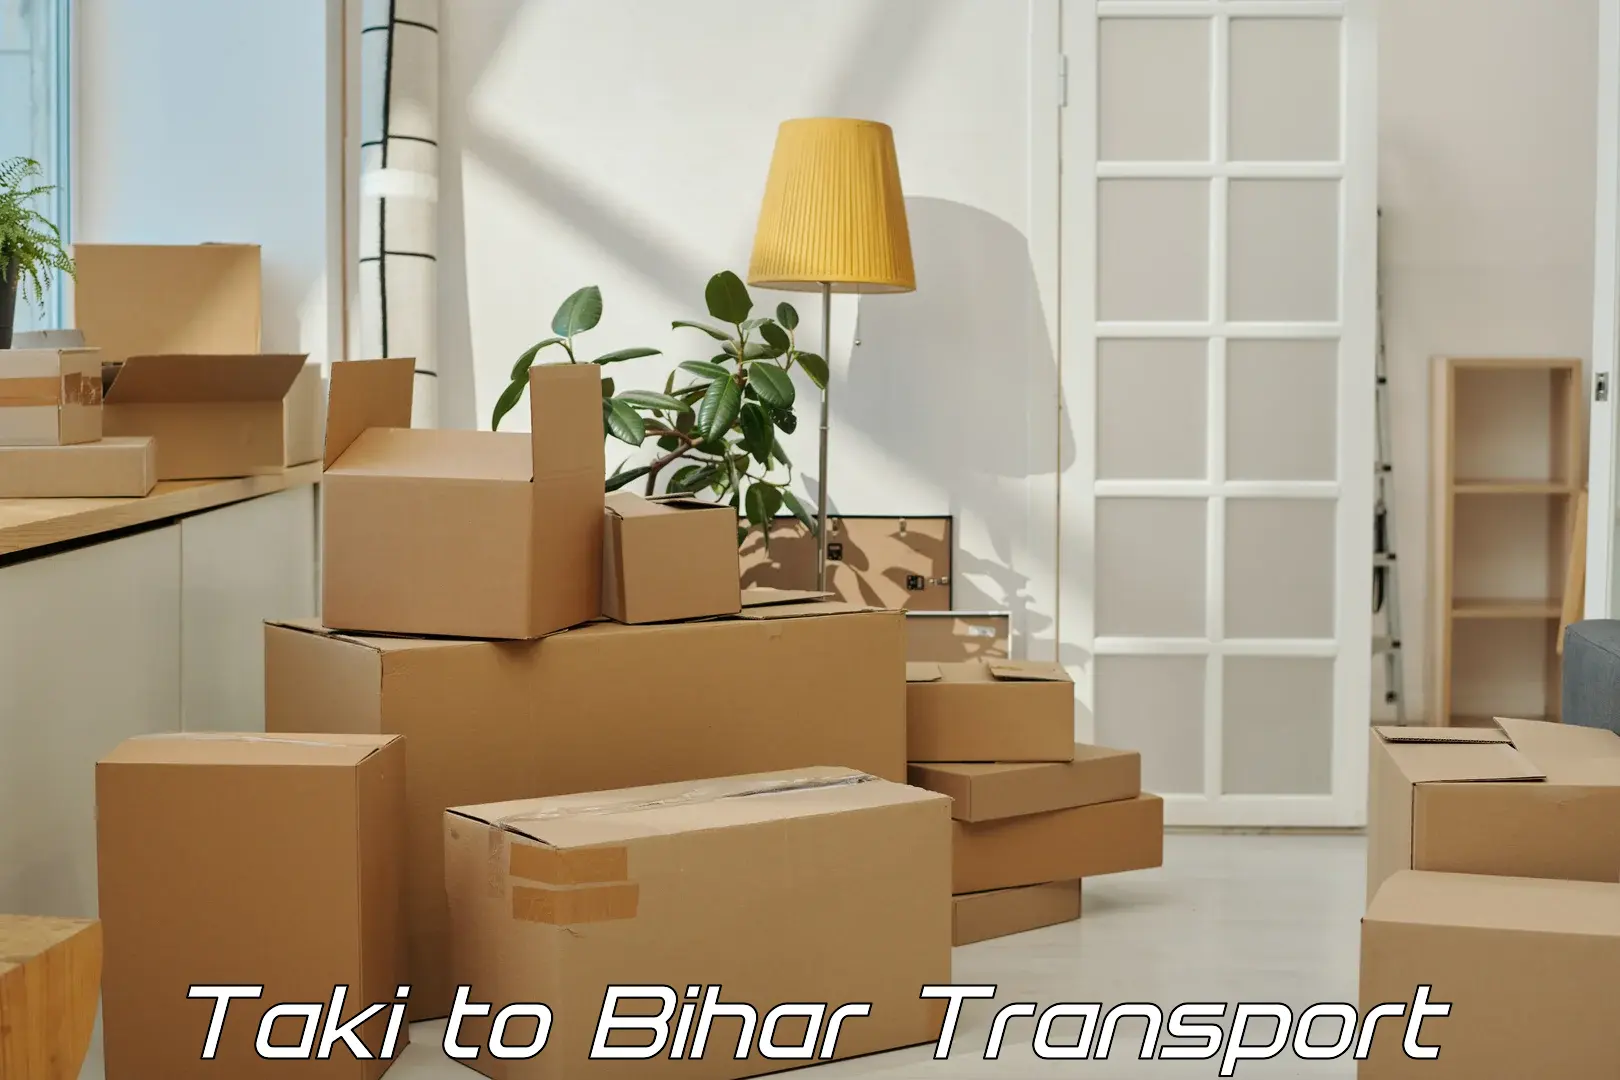 Furniture transport service Taki to Barhiya